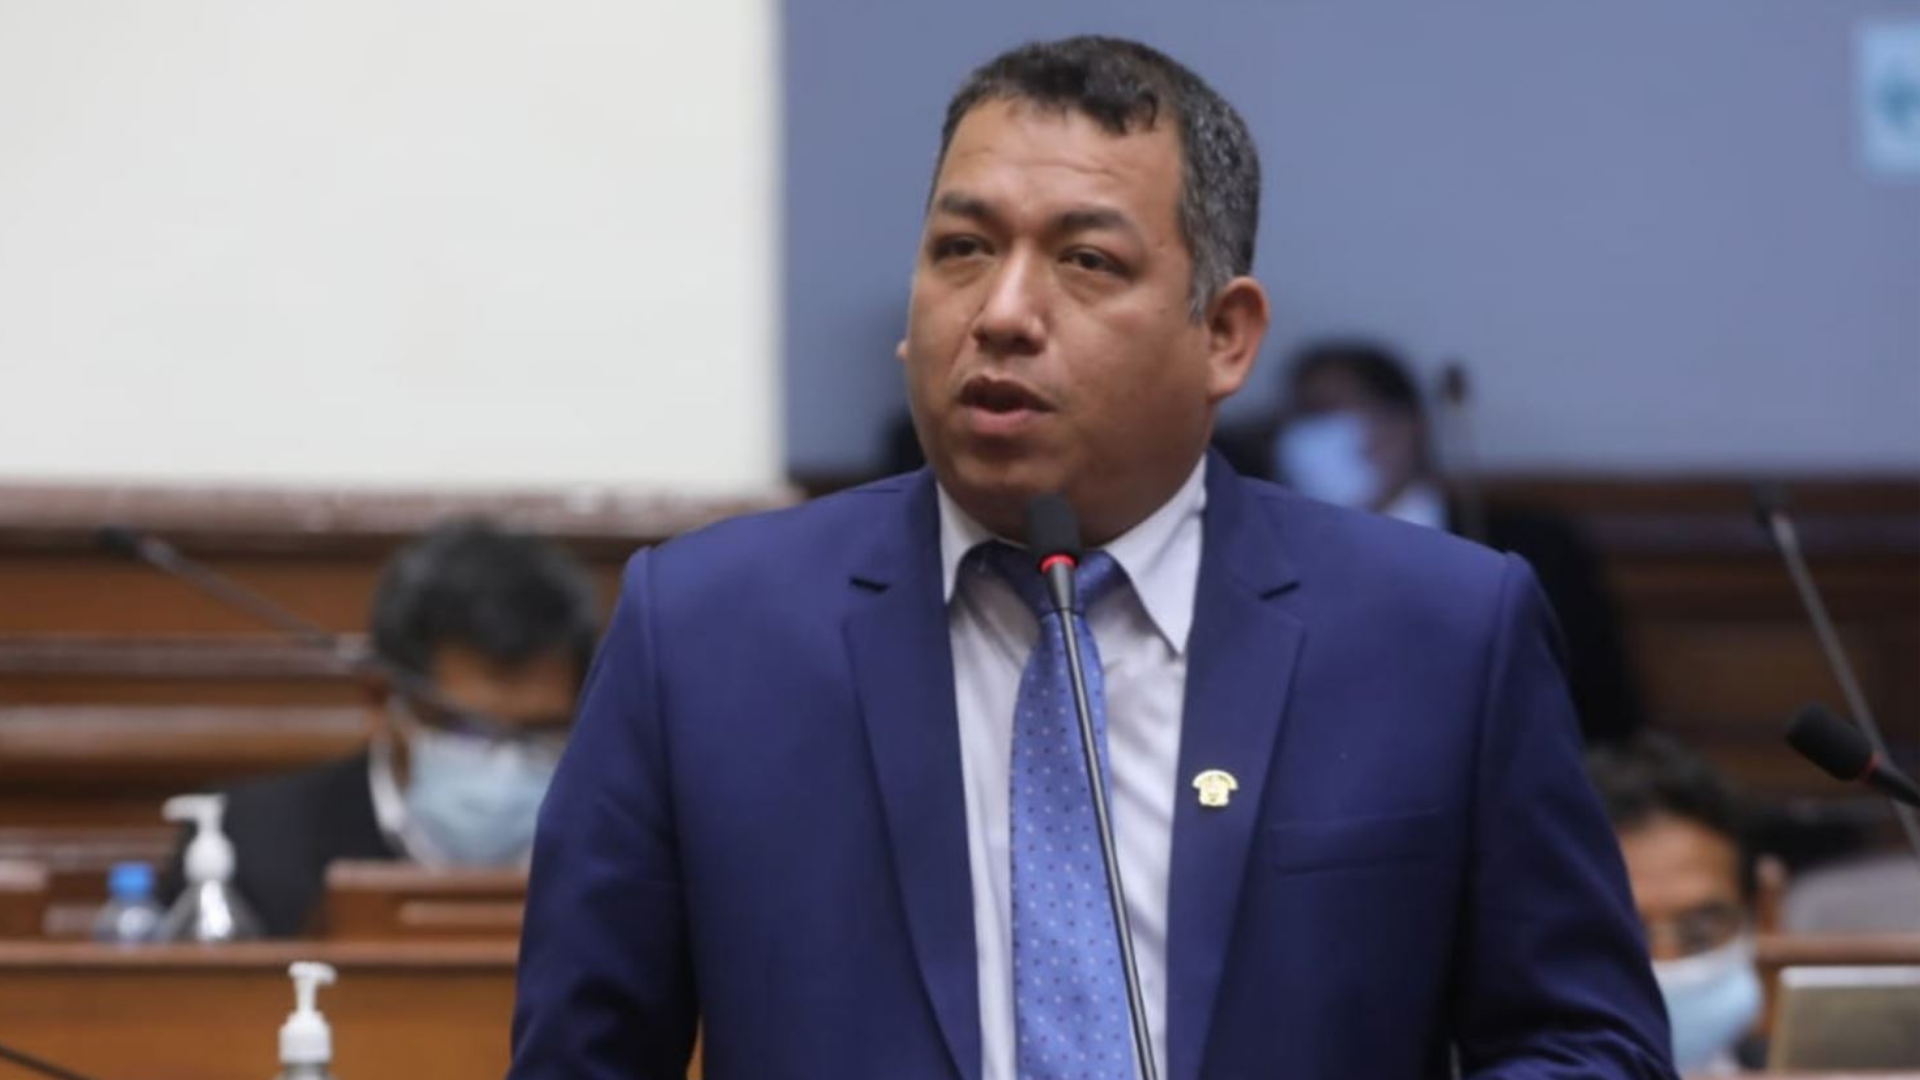 Allanan a congresista Espinoza por malversar fondos del Congreso